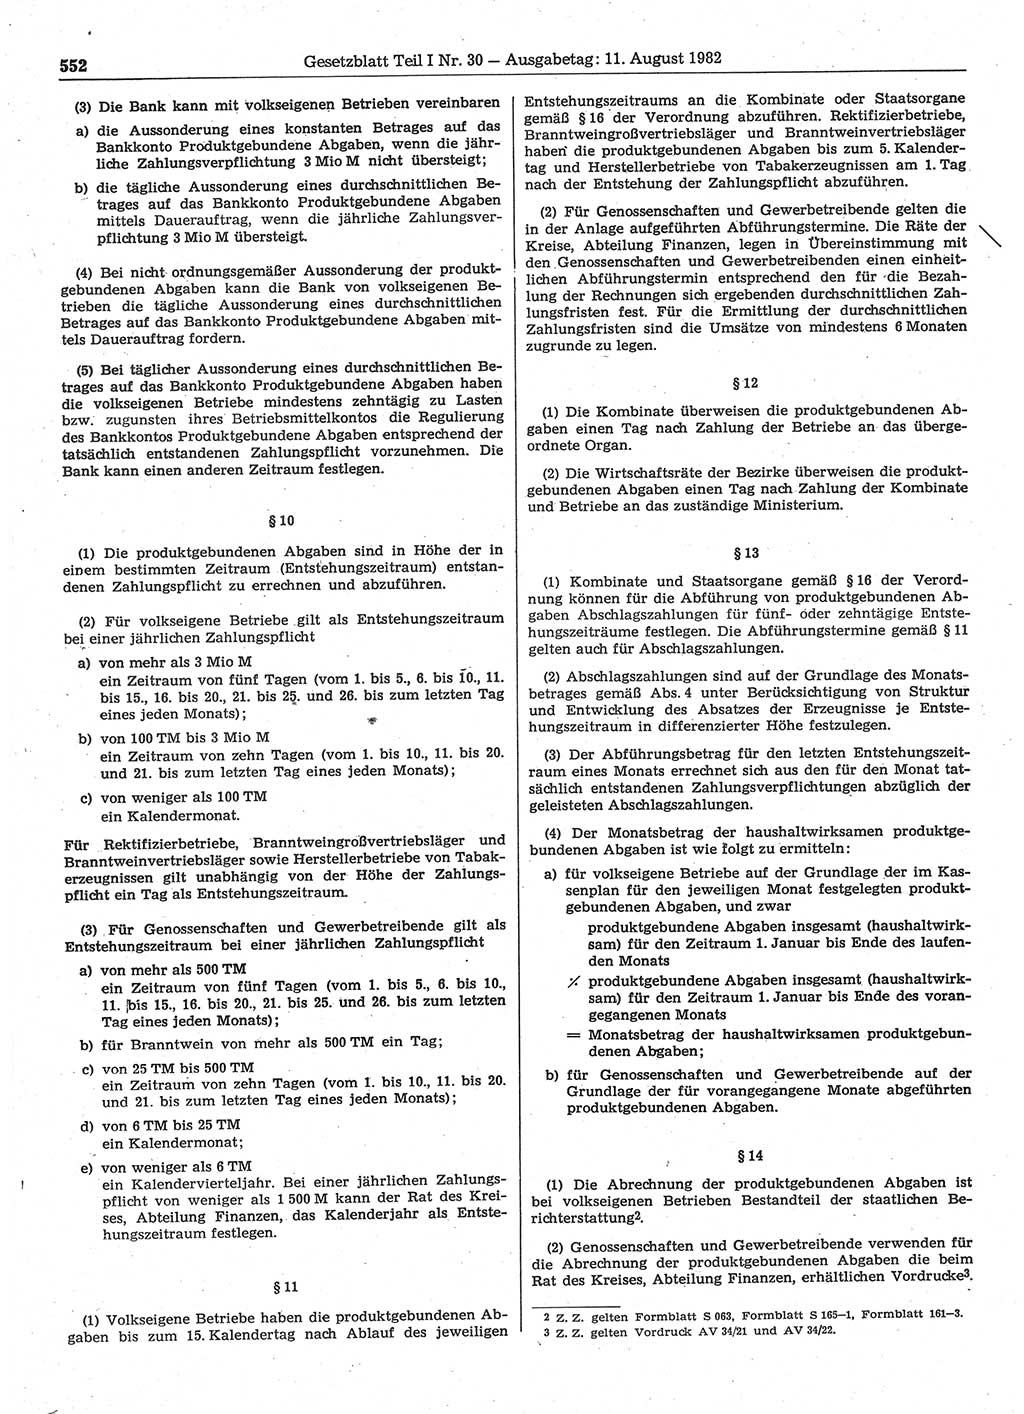 Gesetzblatt (GBl.) der Deutschen Demokratischen Republik (DDR) Teil Ⅰ 1982, Seite 552 (GBl. DDR Ⅰ 1982, S. 552)